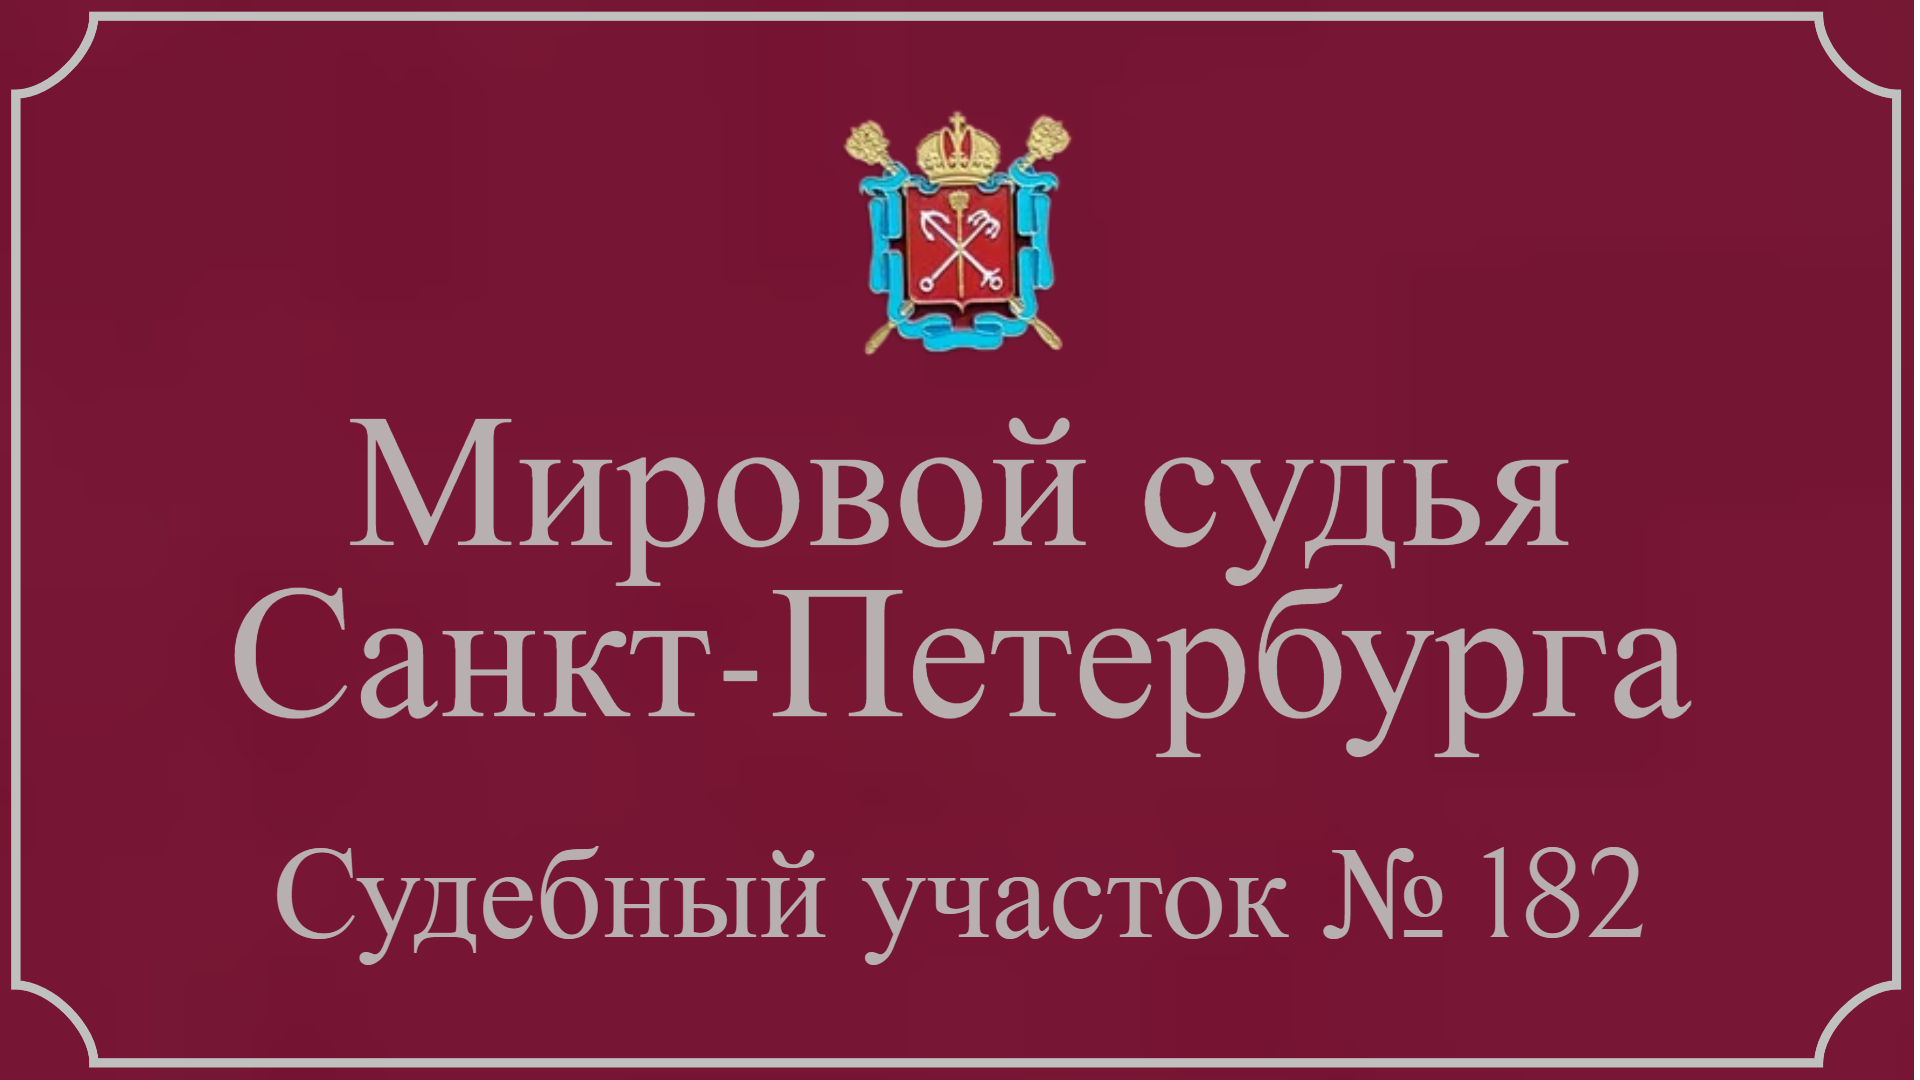 Информация по 182 судебному участку в Санкт-Петербурге.